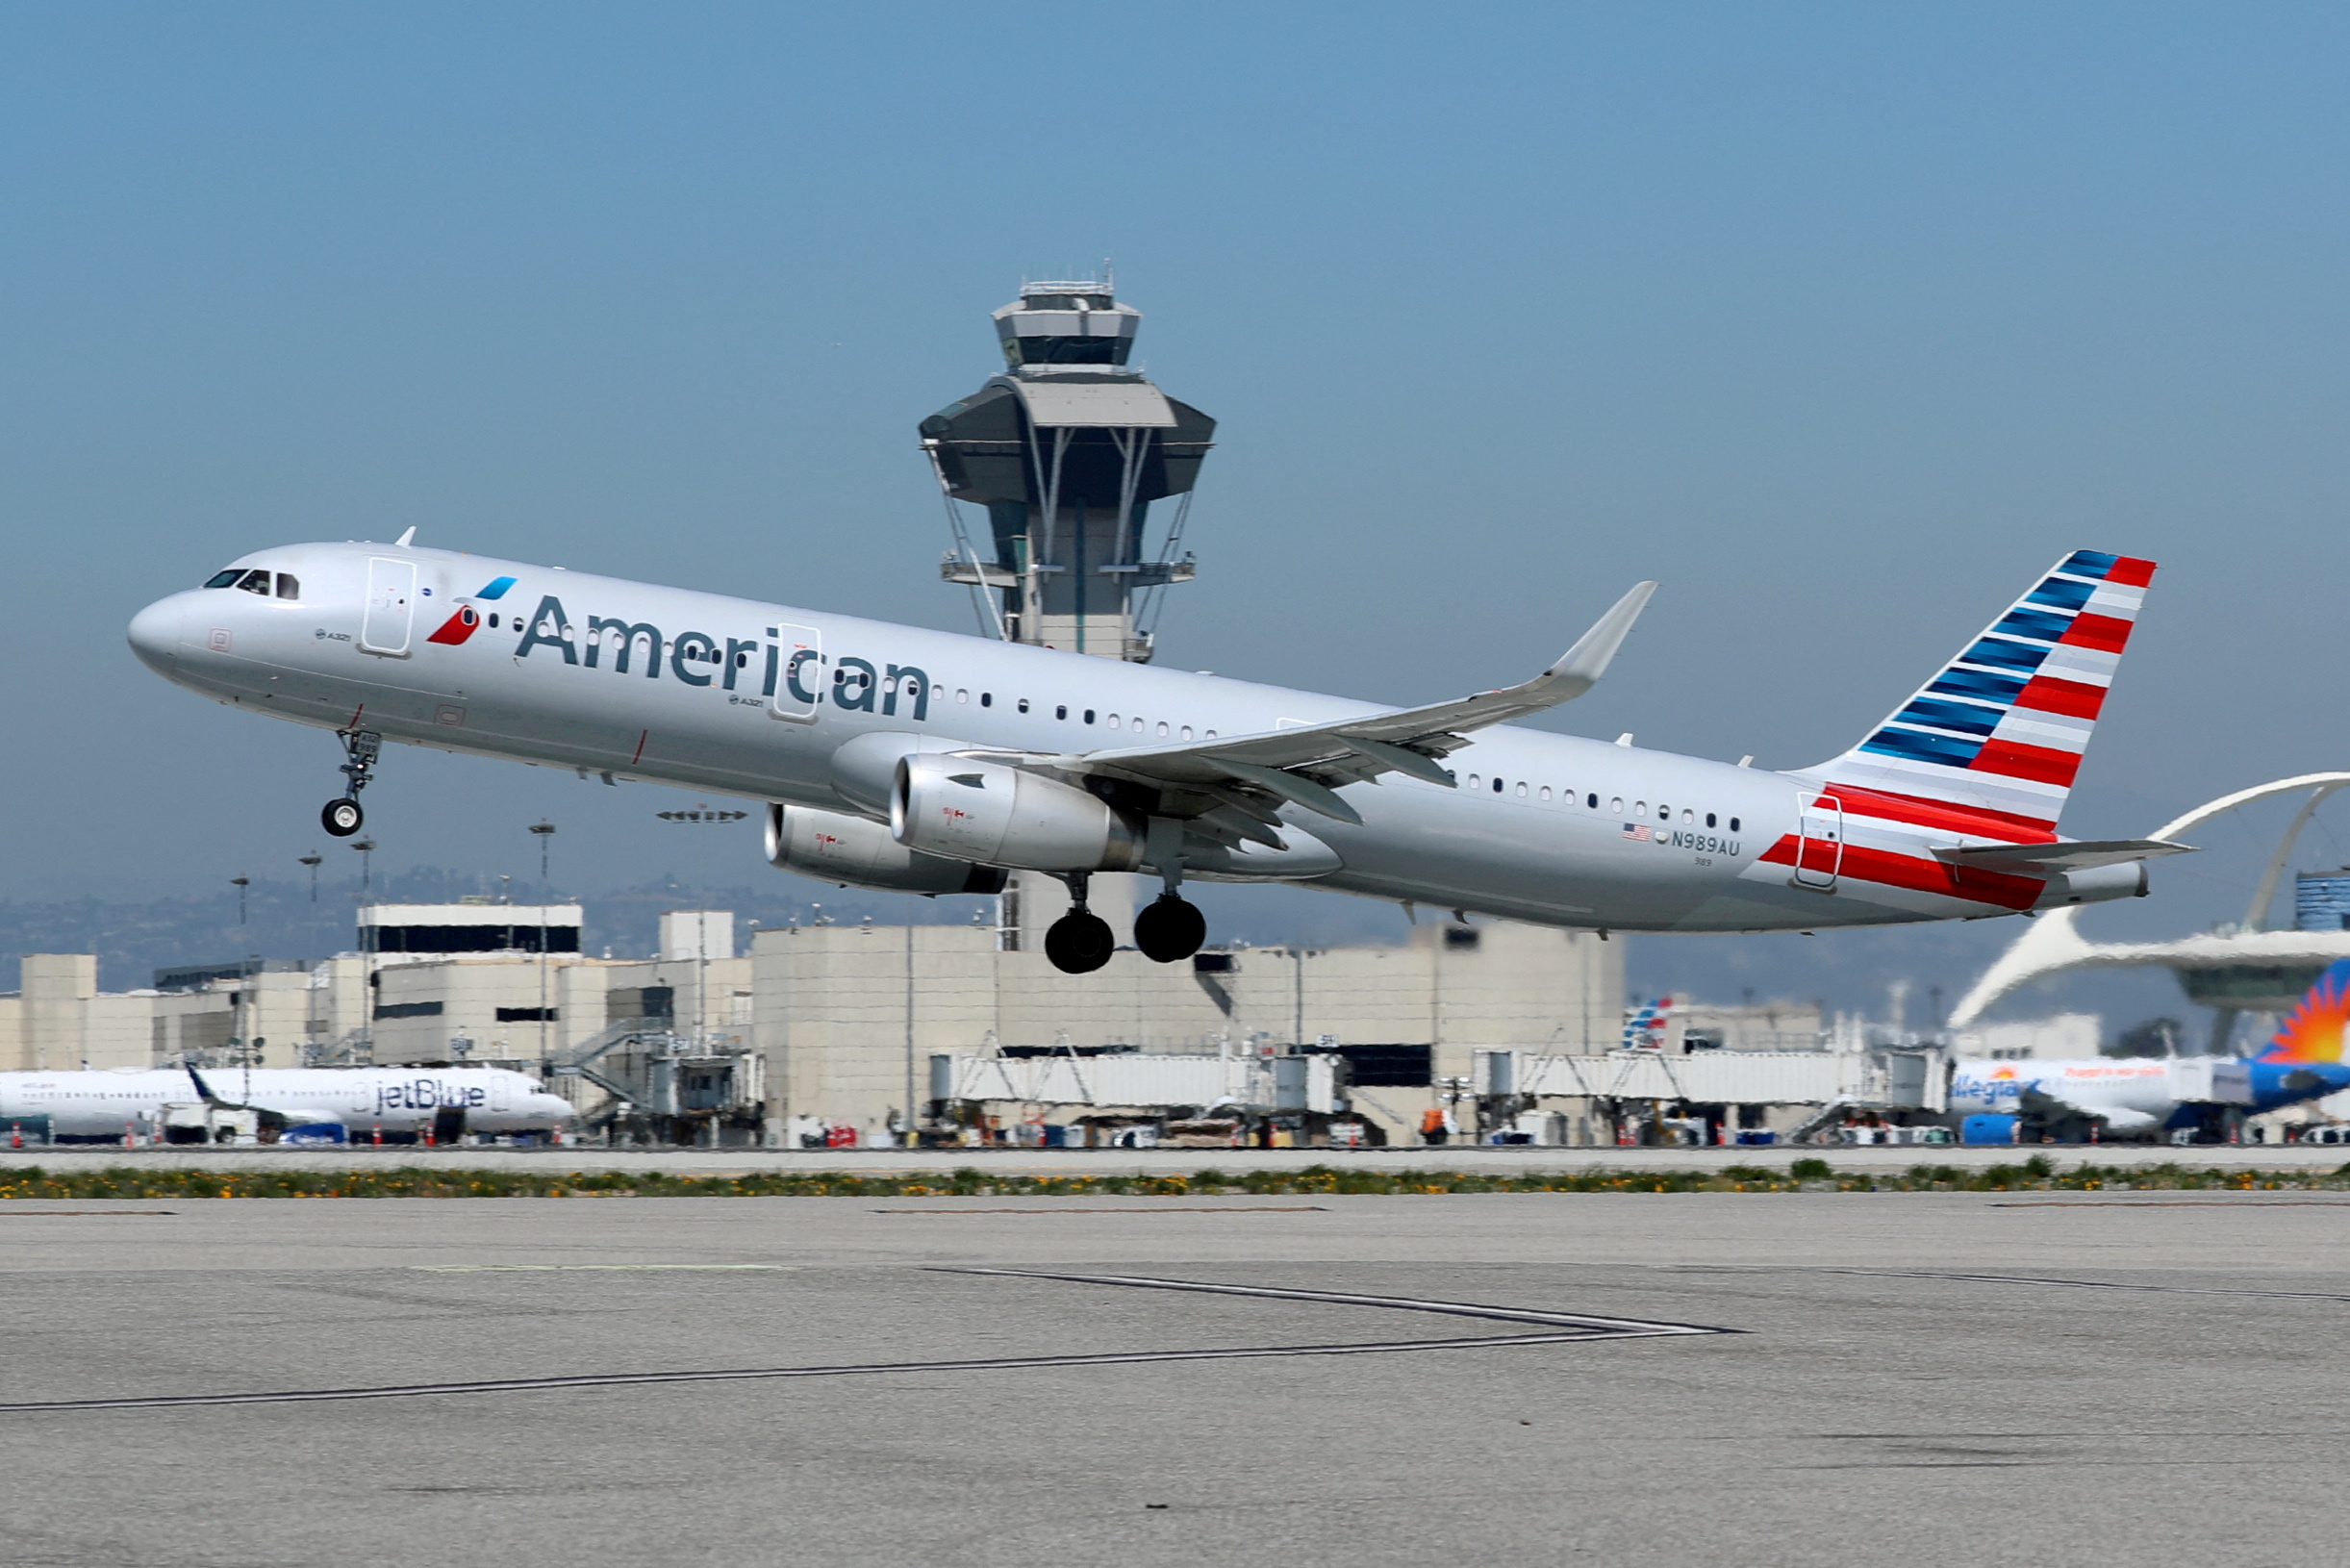 FOTO DE ARCHIVO: Un avión Airbus A321-200 de American Airlines despega del aeropuerto internacional de Los Ángeles (LAX) en Los Ángeles, California, Estados Unidos 28 de marzo de 2018. REUTERS/Mike Blake